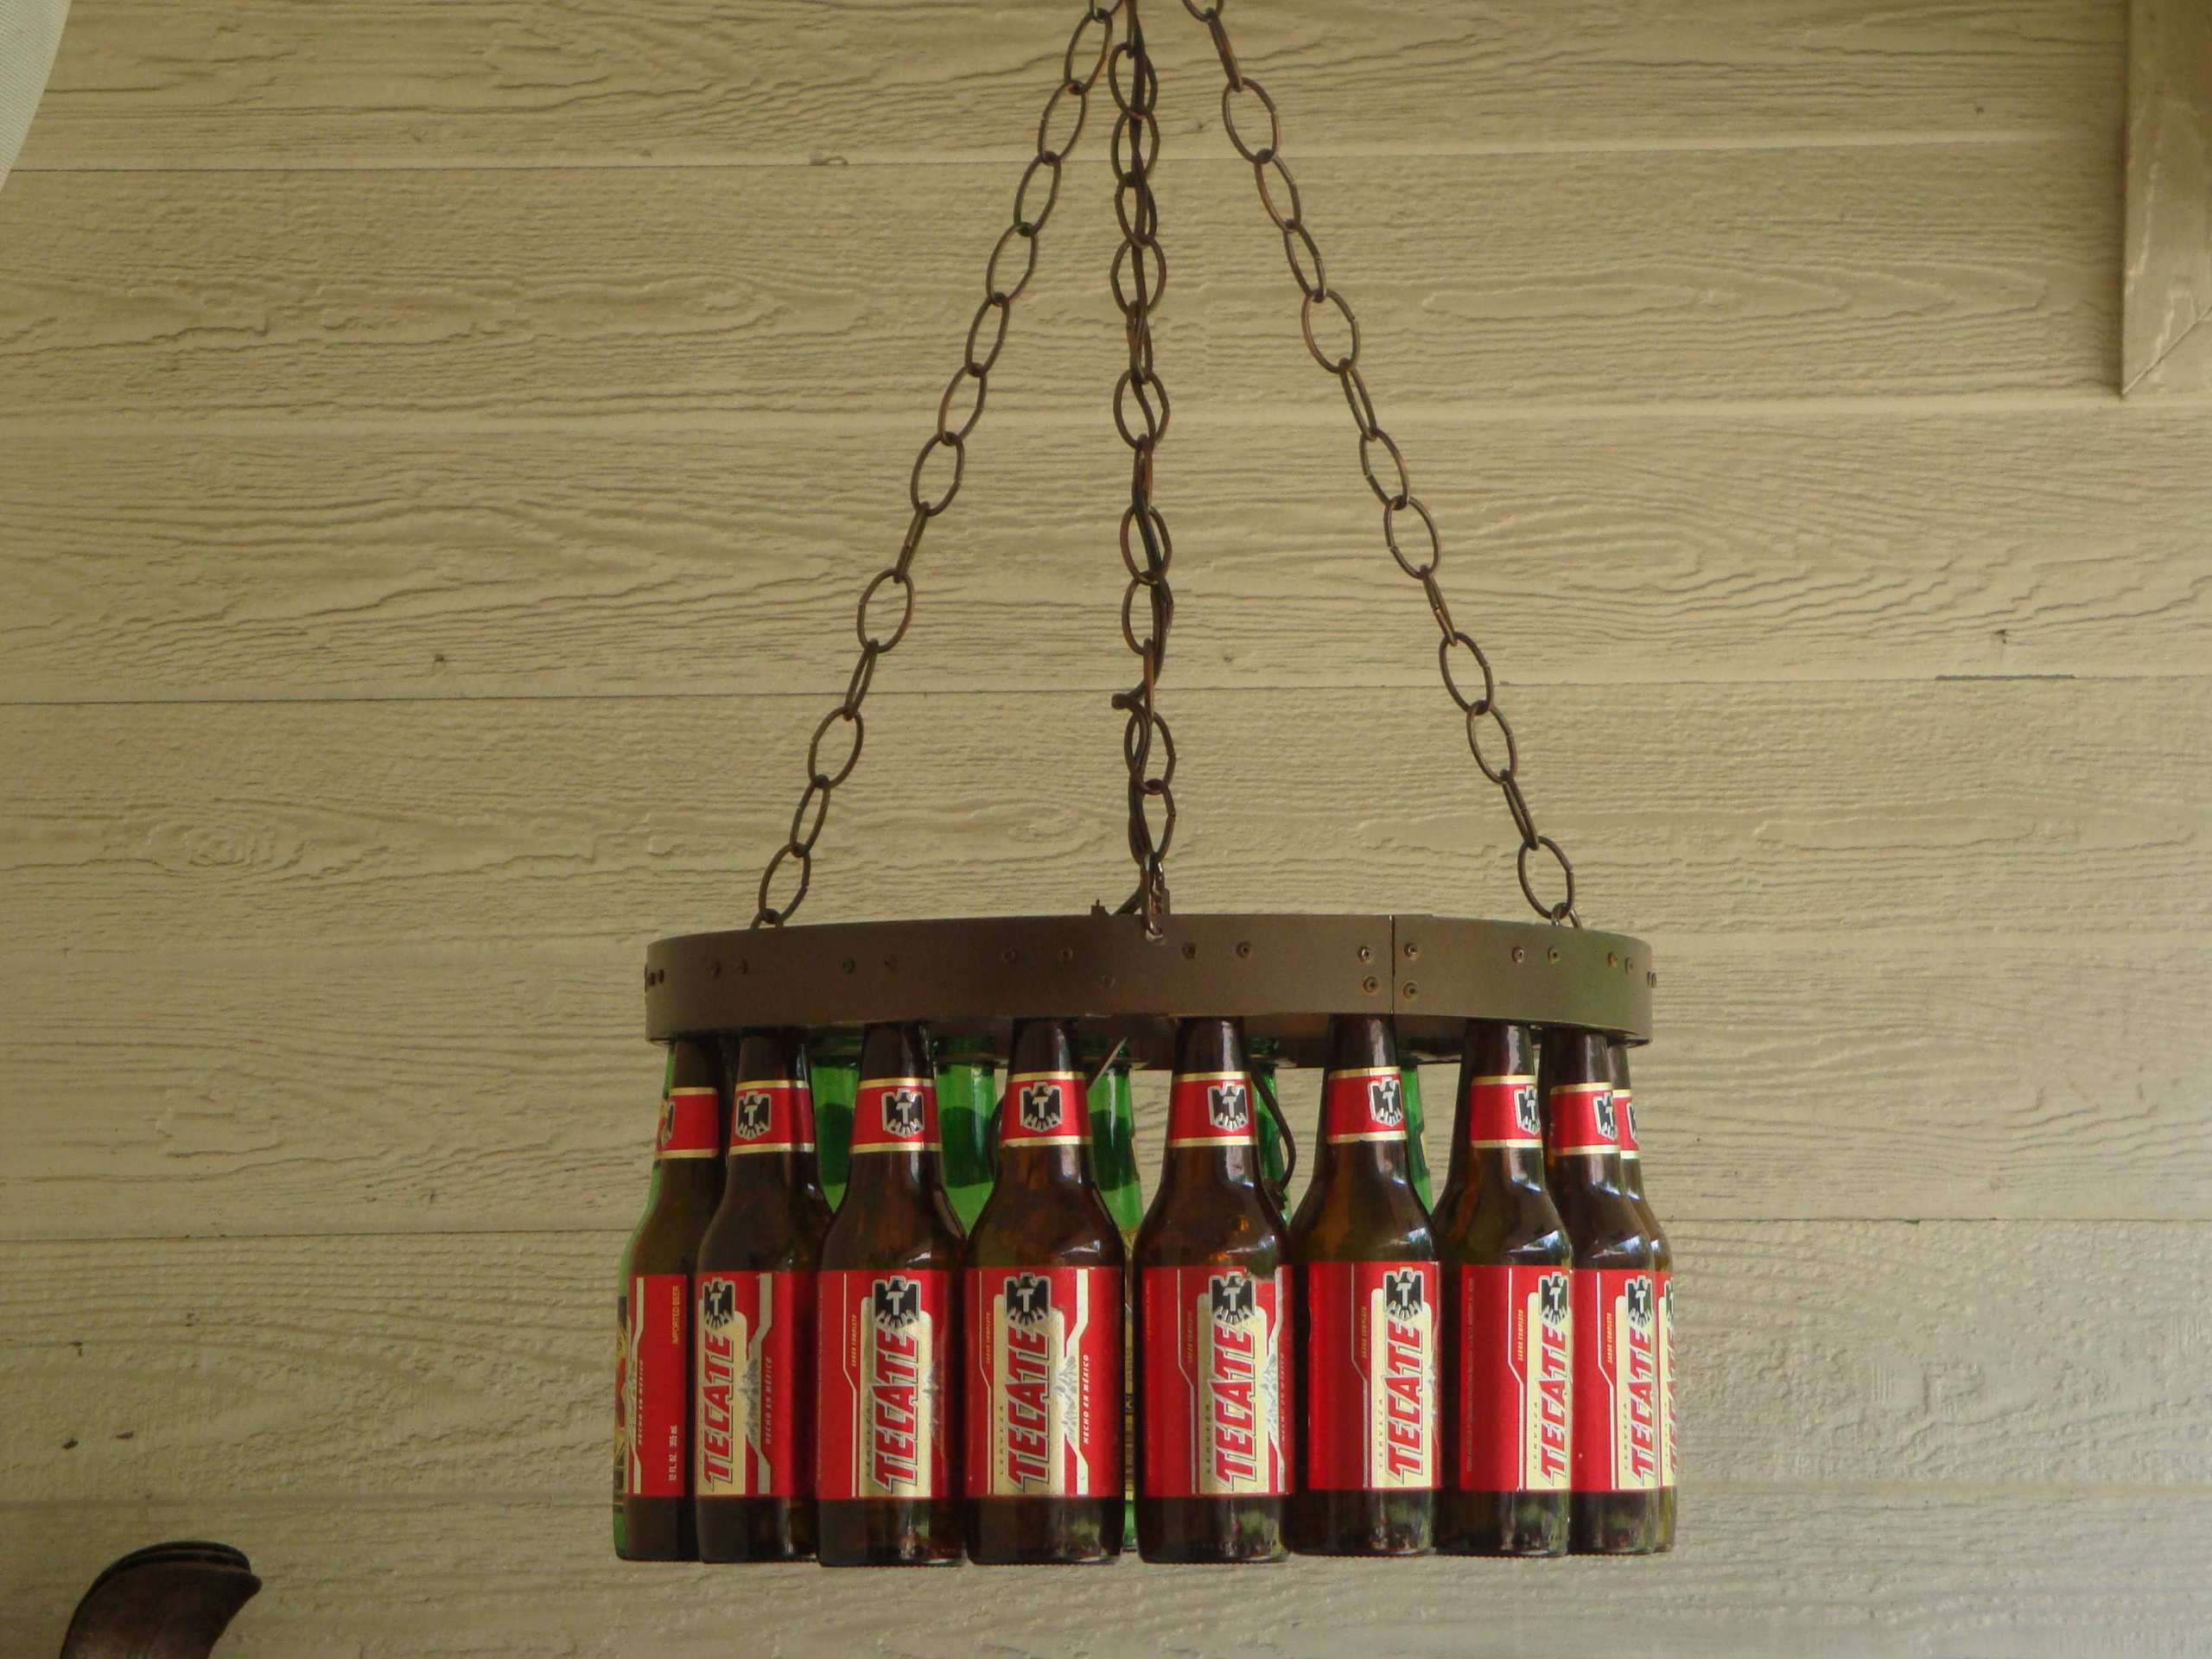 Beer Bottle Chandelier - Beer Bottles Hd - HD Wallpaper 